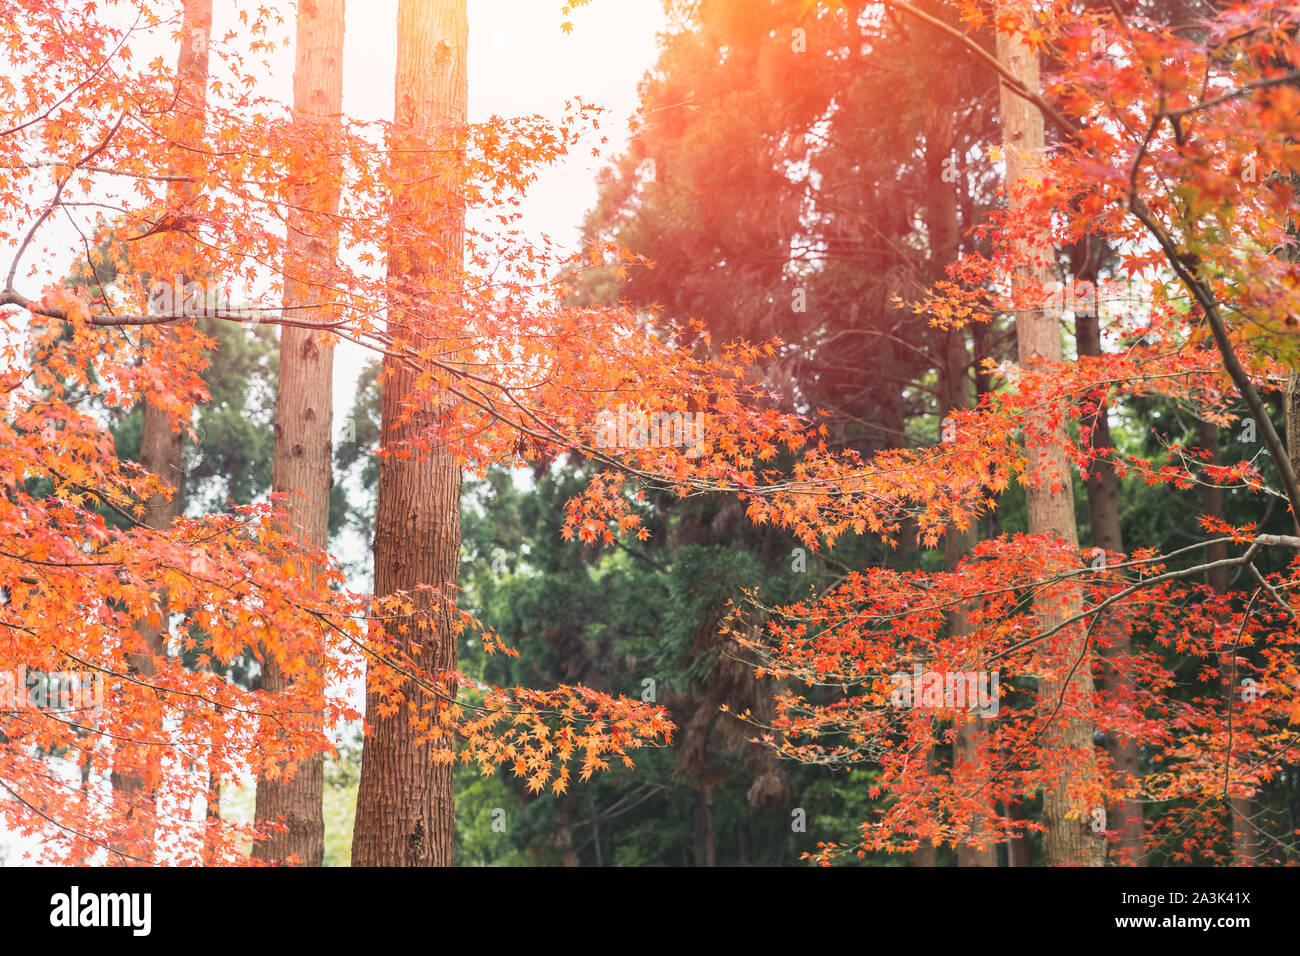 Japan Autume schönen roten Ahorn baum Blatt für Kyoto November Reisen banner Hintergrund. Stockfoto